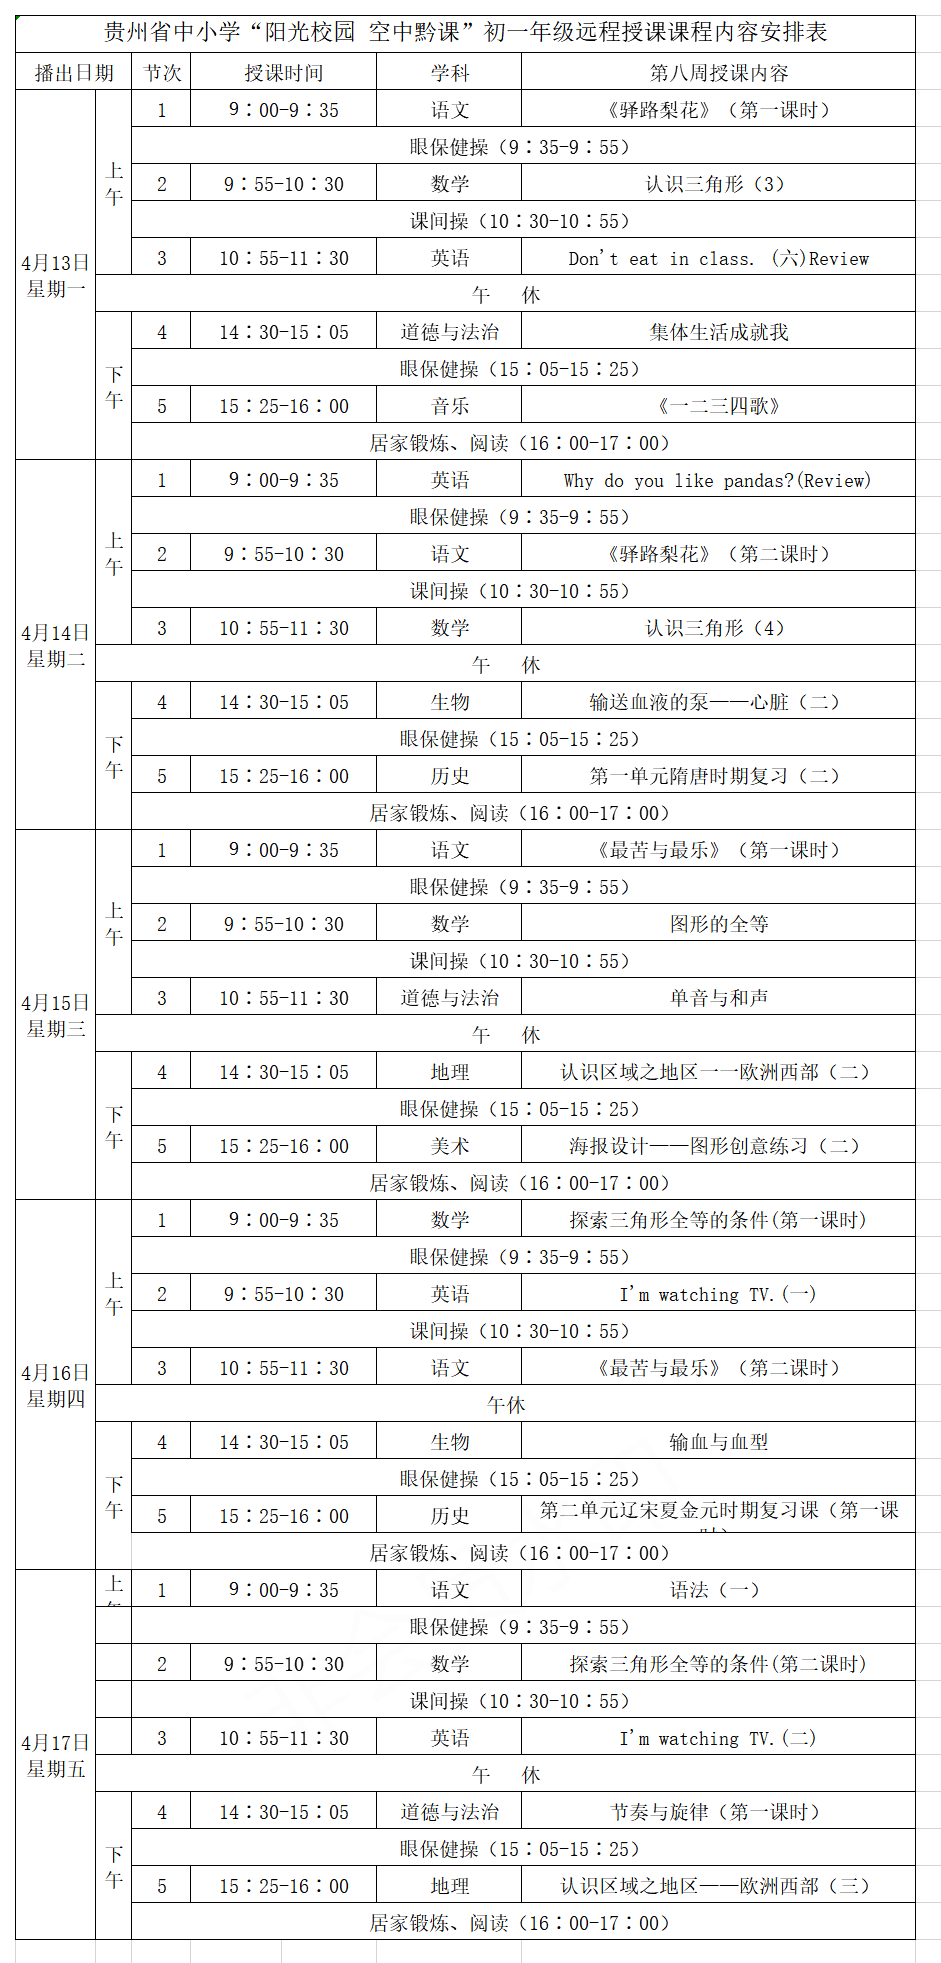 贵州中小学“空中课堂”课程表完整版公布（4月13日3